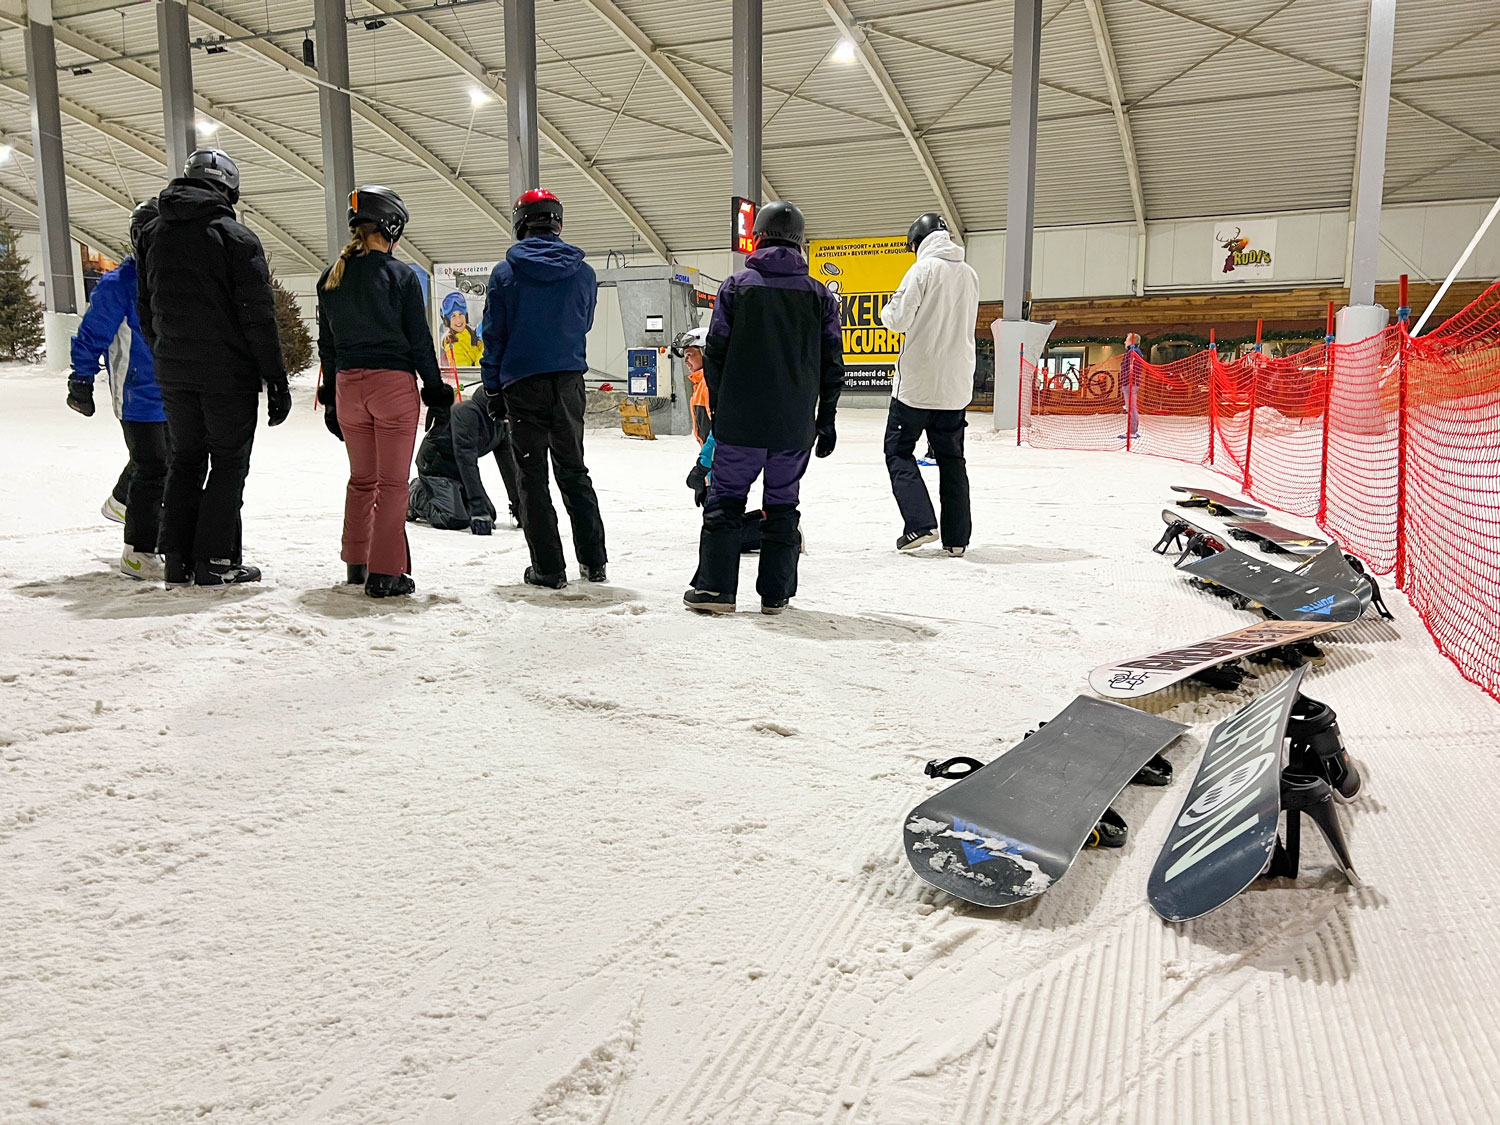 leren snowboarden in indoor skihal